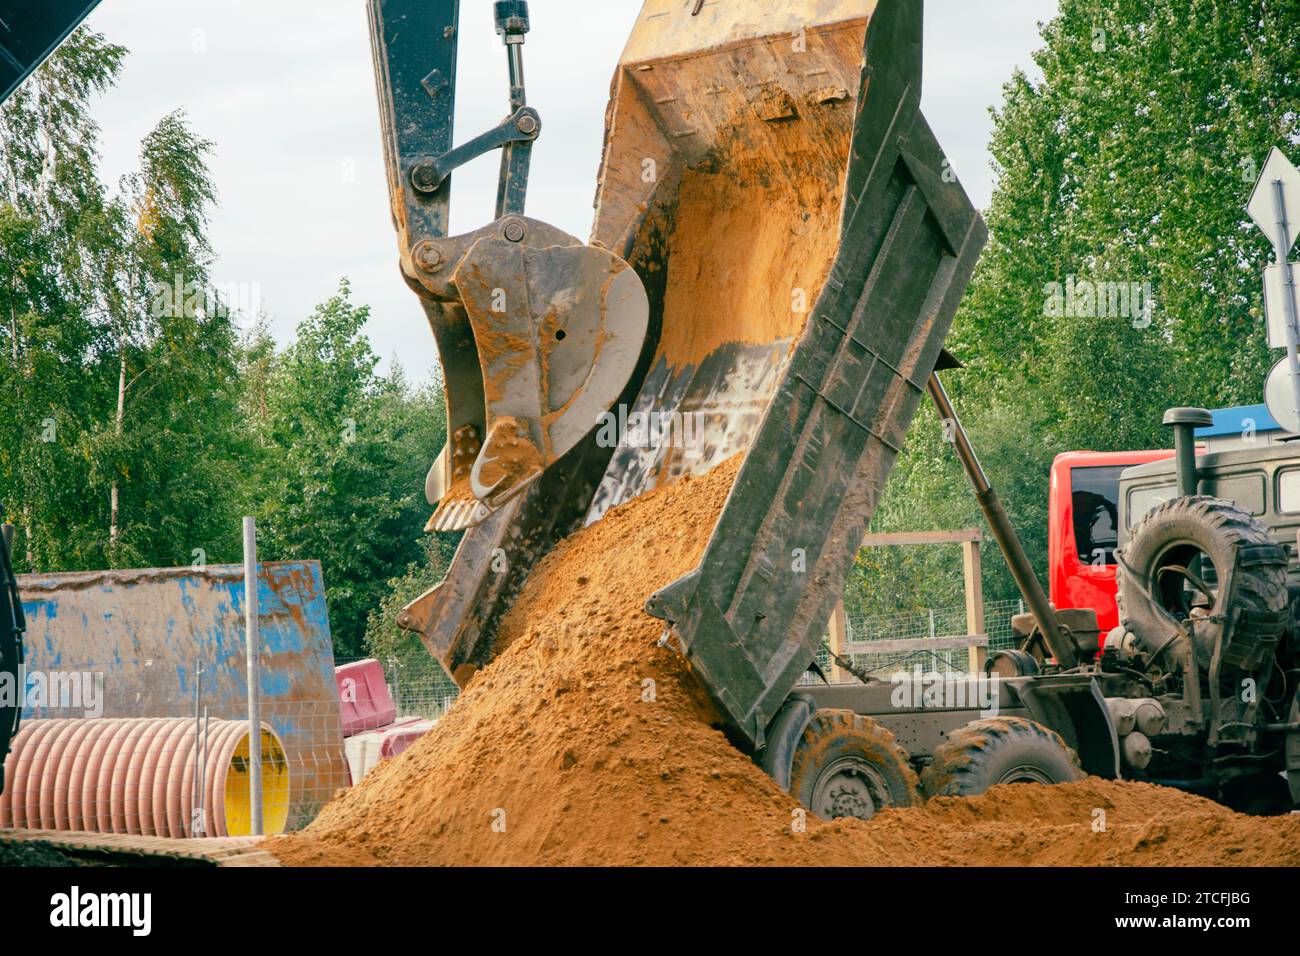 Un escavatore giallo con una grande benna sta scaricando la sabbia da un camion in un vivace cantiere in una giornata di sole, mostrando le attrezzature pesanti Foto Stock